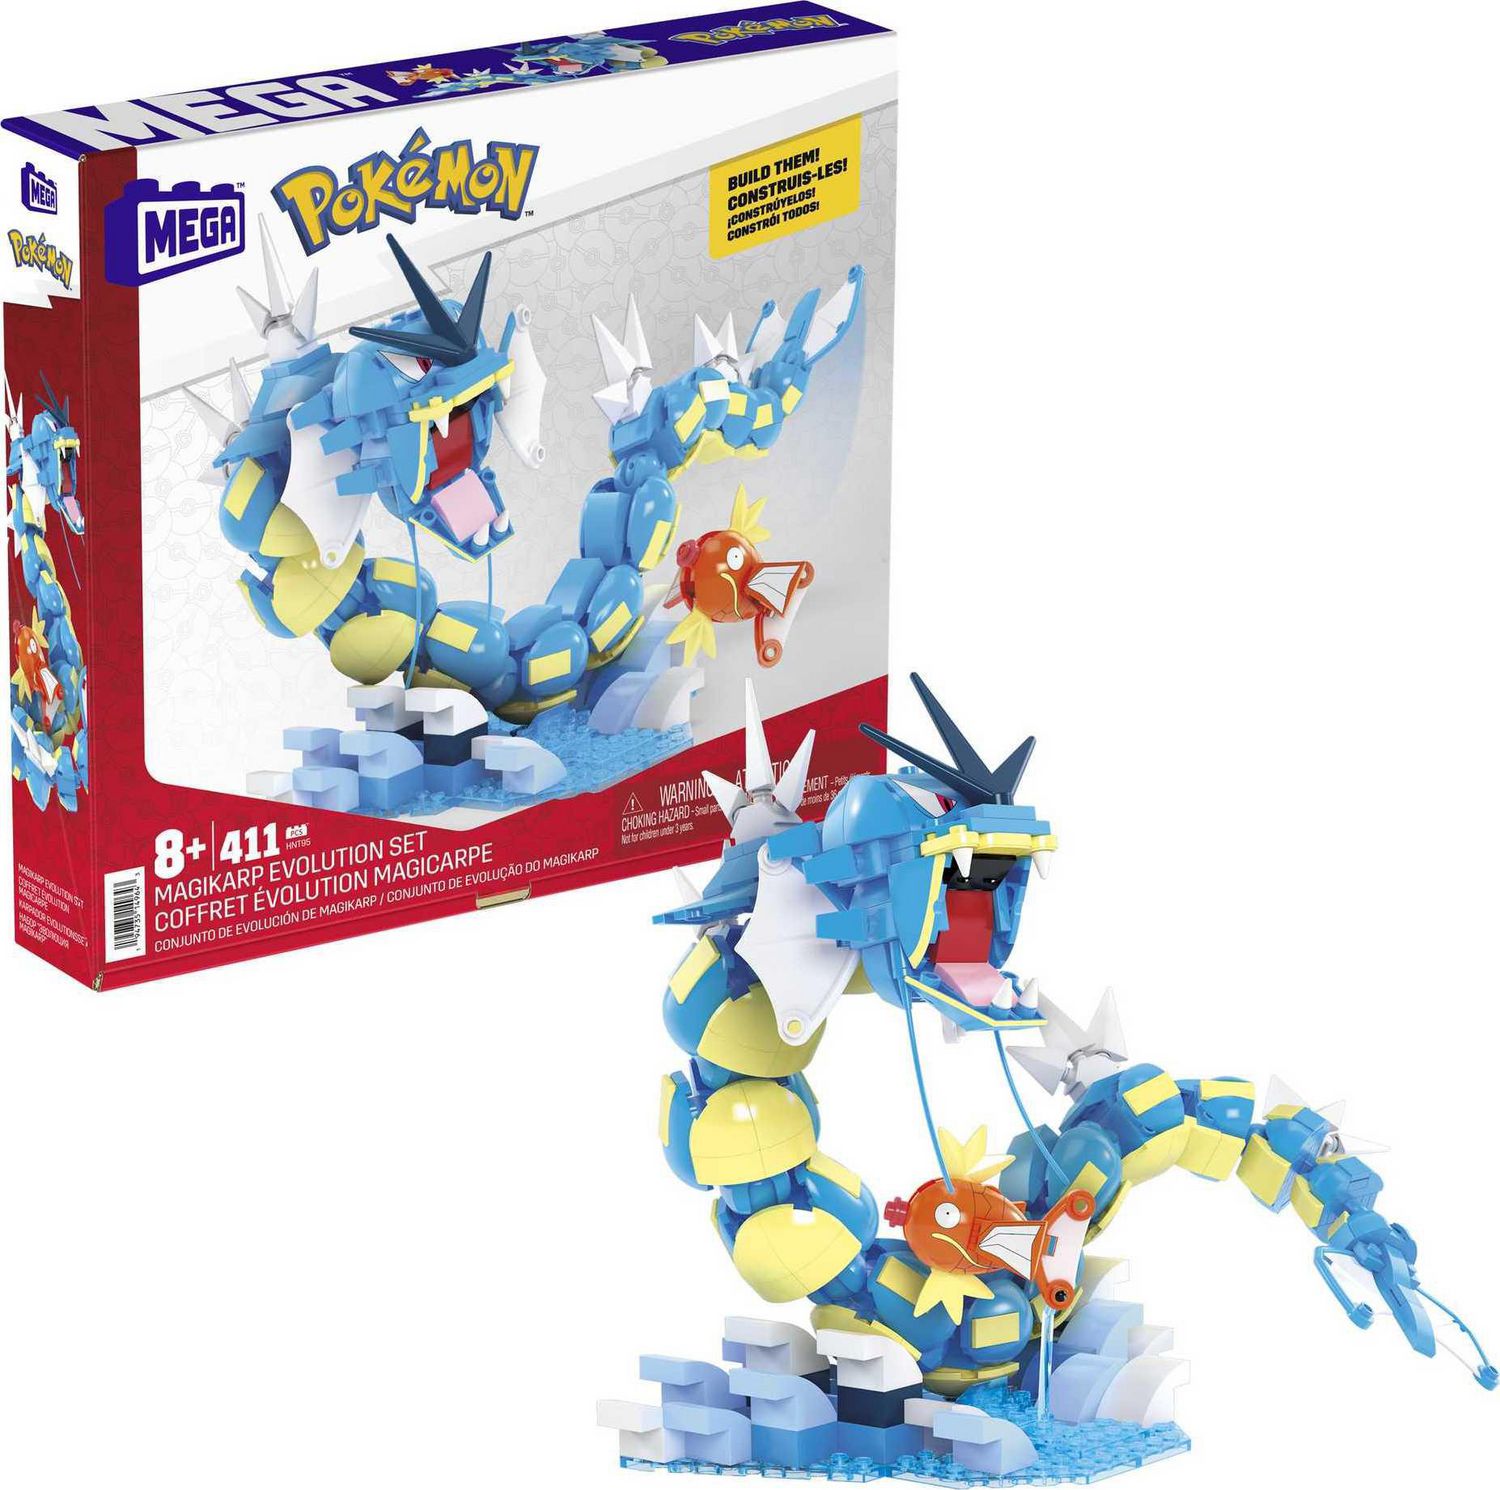 MEGA – Pokémon – Coffret – Trio de la Région de Kanto, 3 figurines - 529  pièces Âges 7+ 